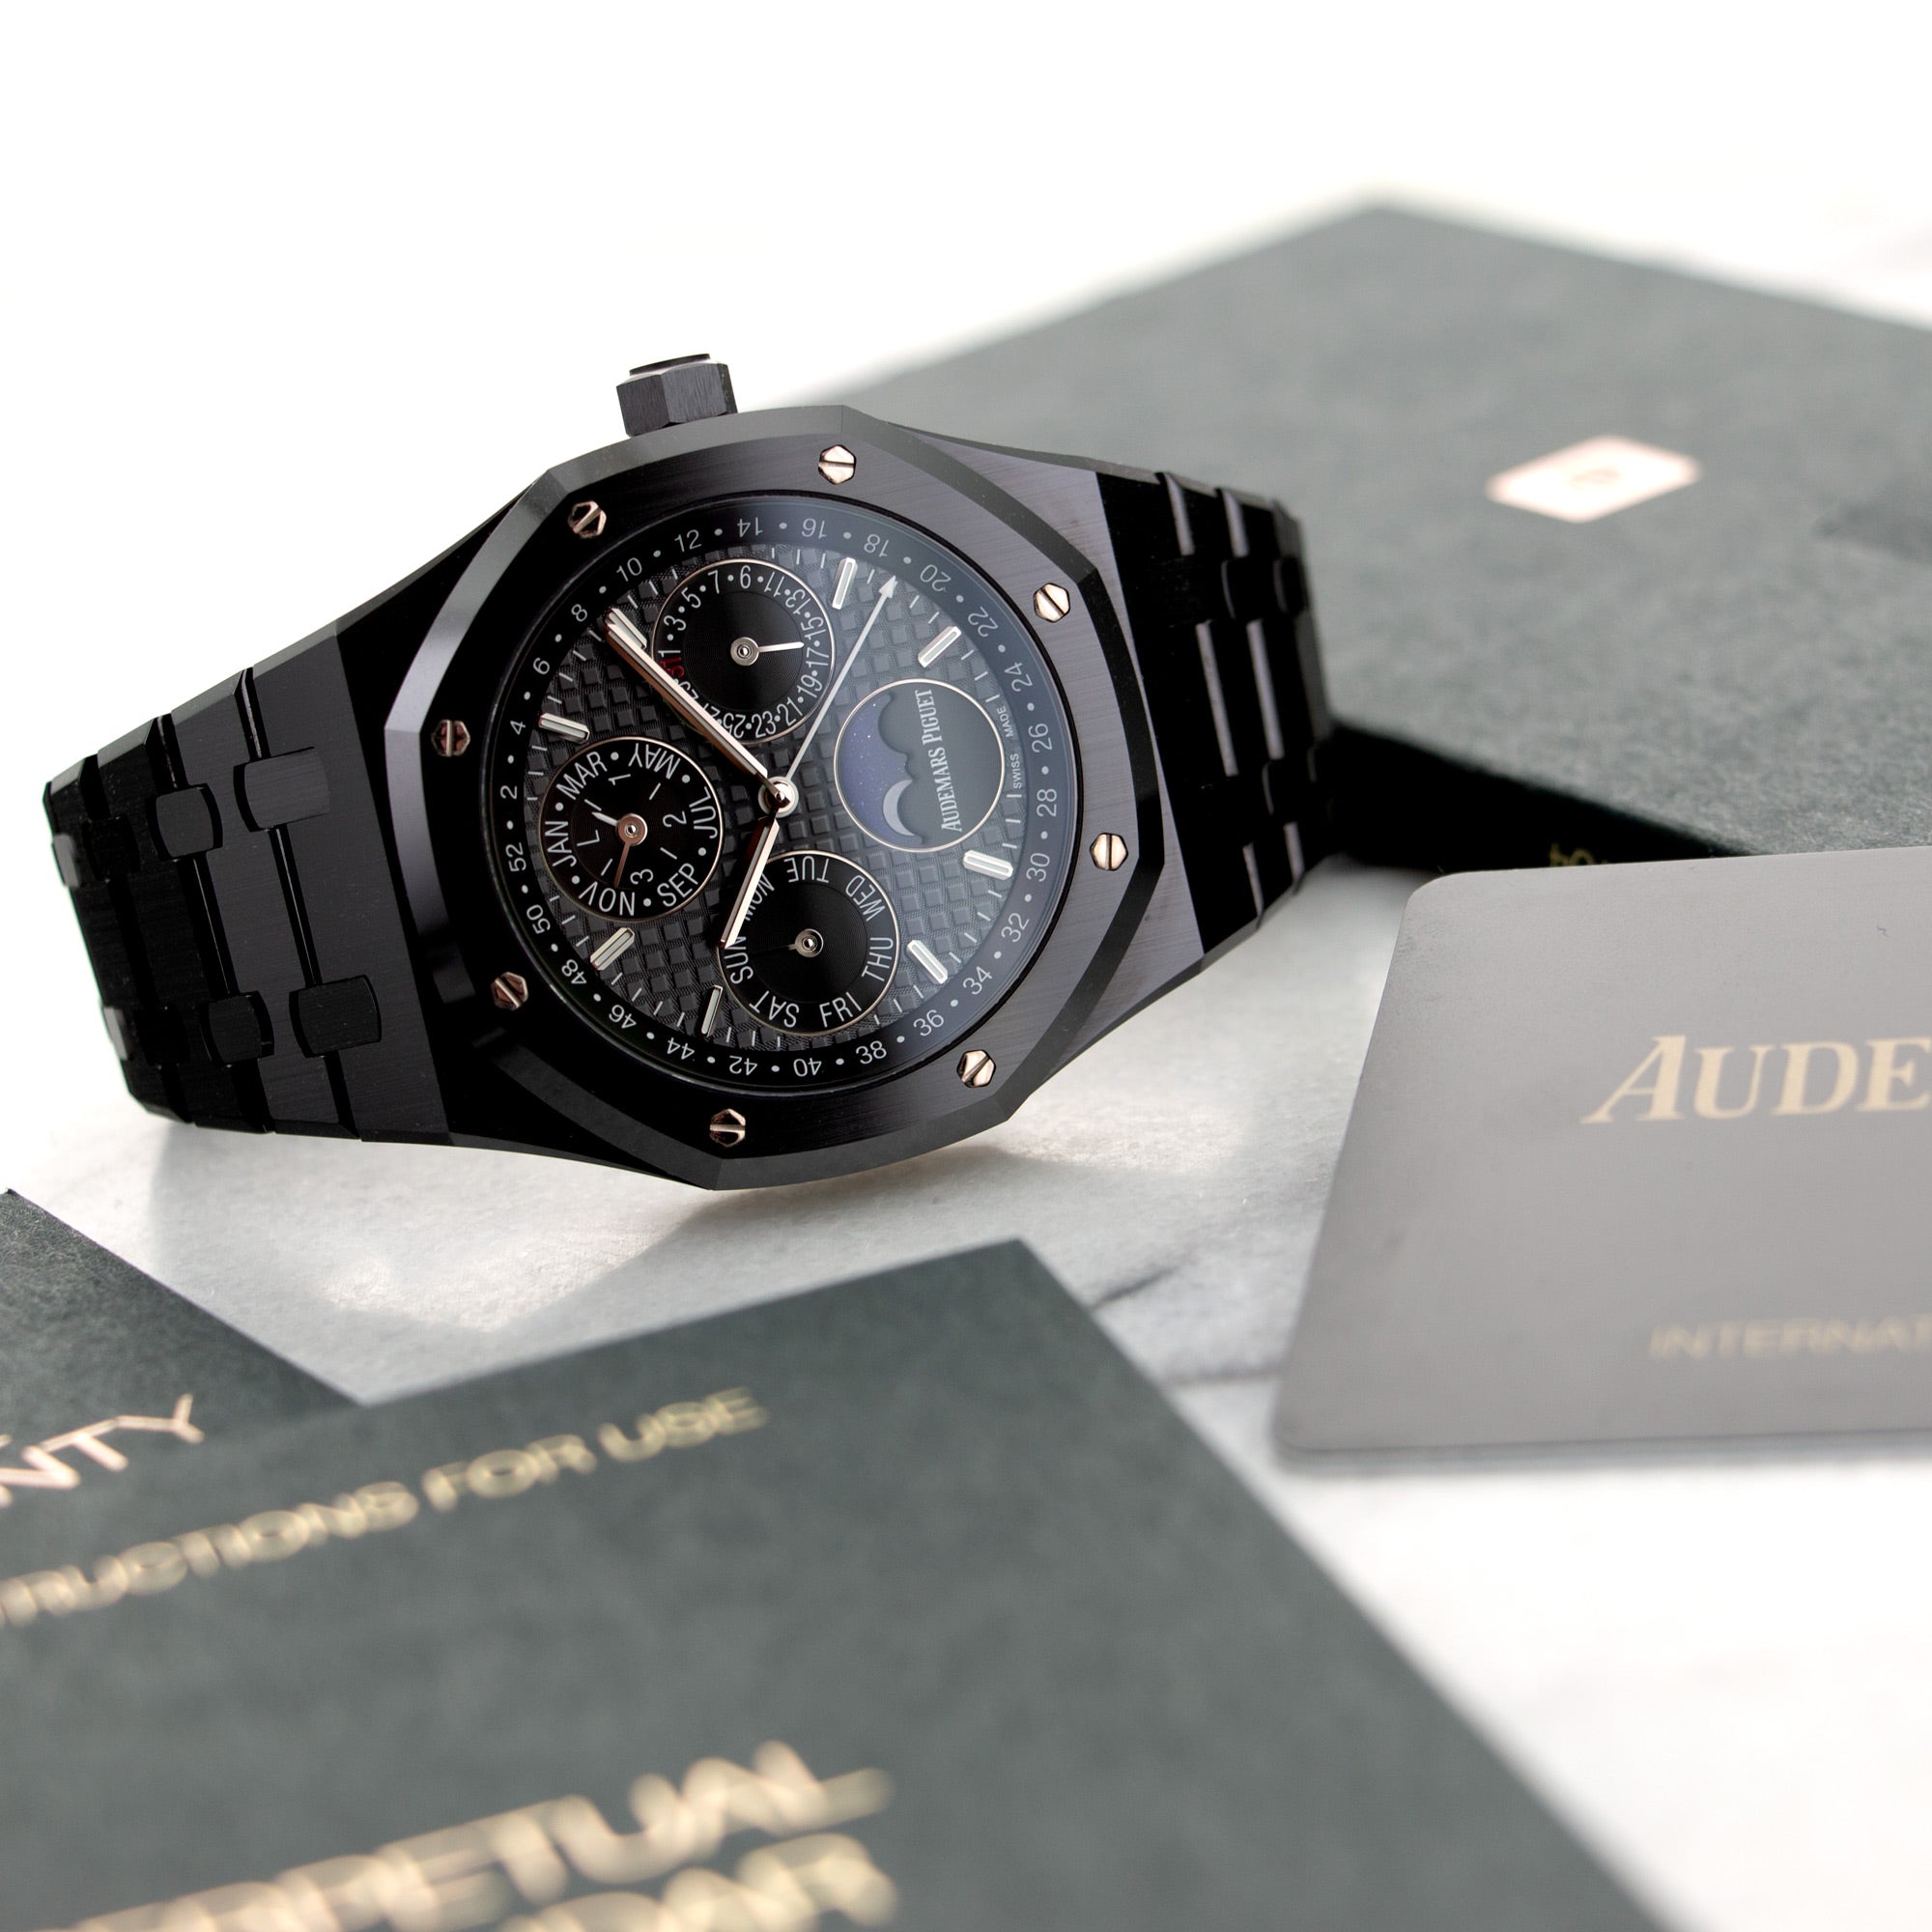 Audemars Piguet - Audemars Piguet Black Ceramic Royal Oak Perpetual Calendar Watch - The Keystone Watches